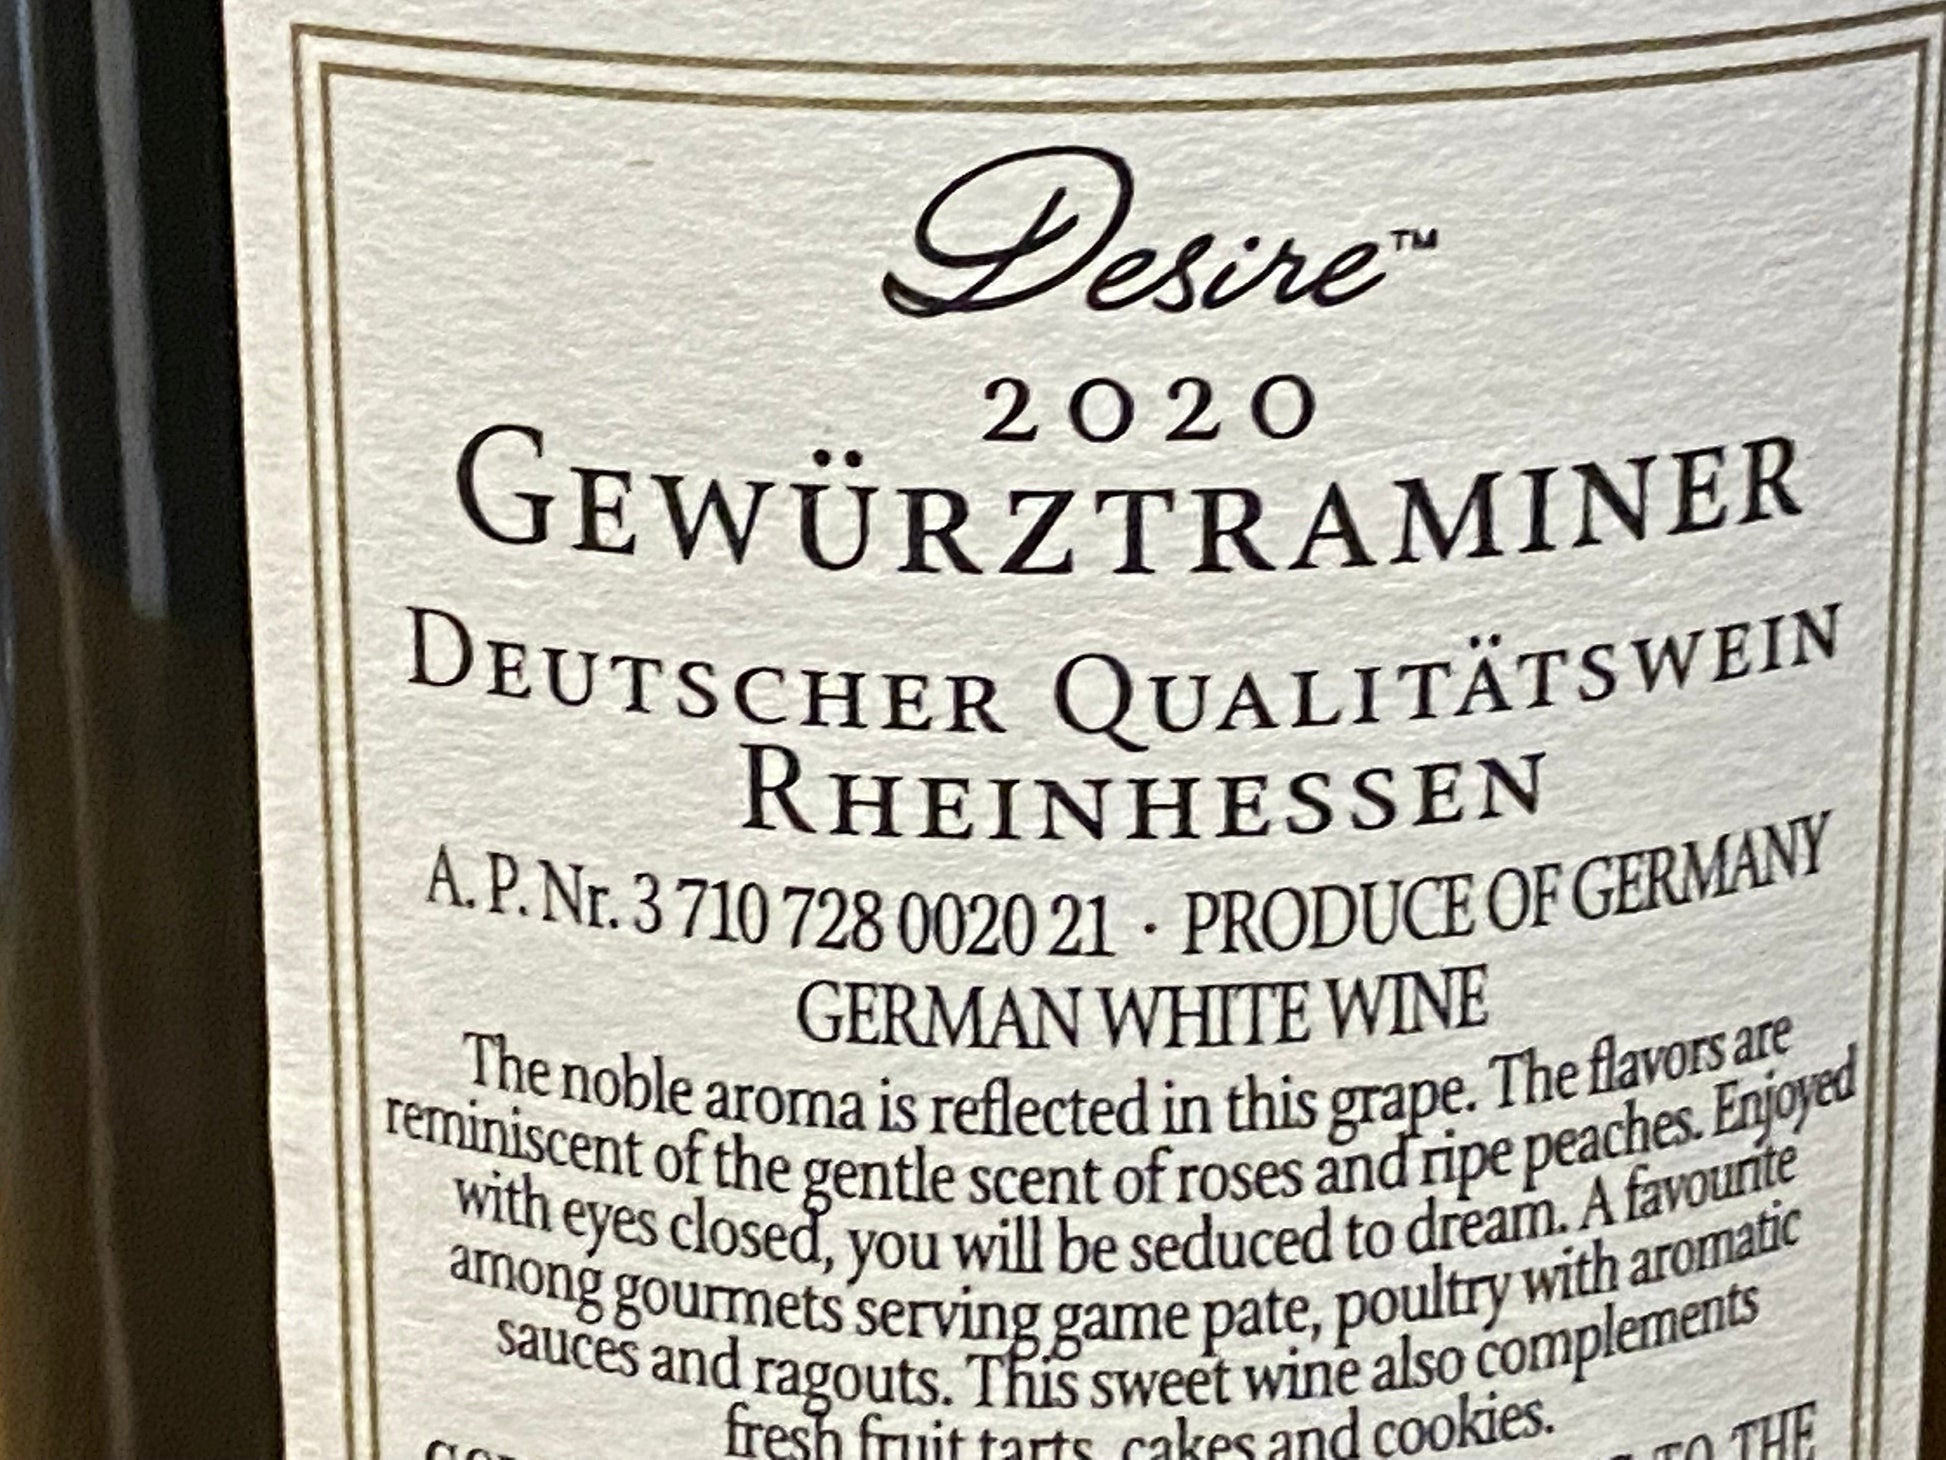 Desire Gewurstraminer “2020” - Your Wine Stop   -   Denver, NC